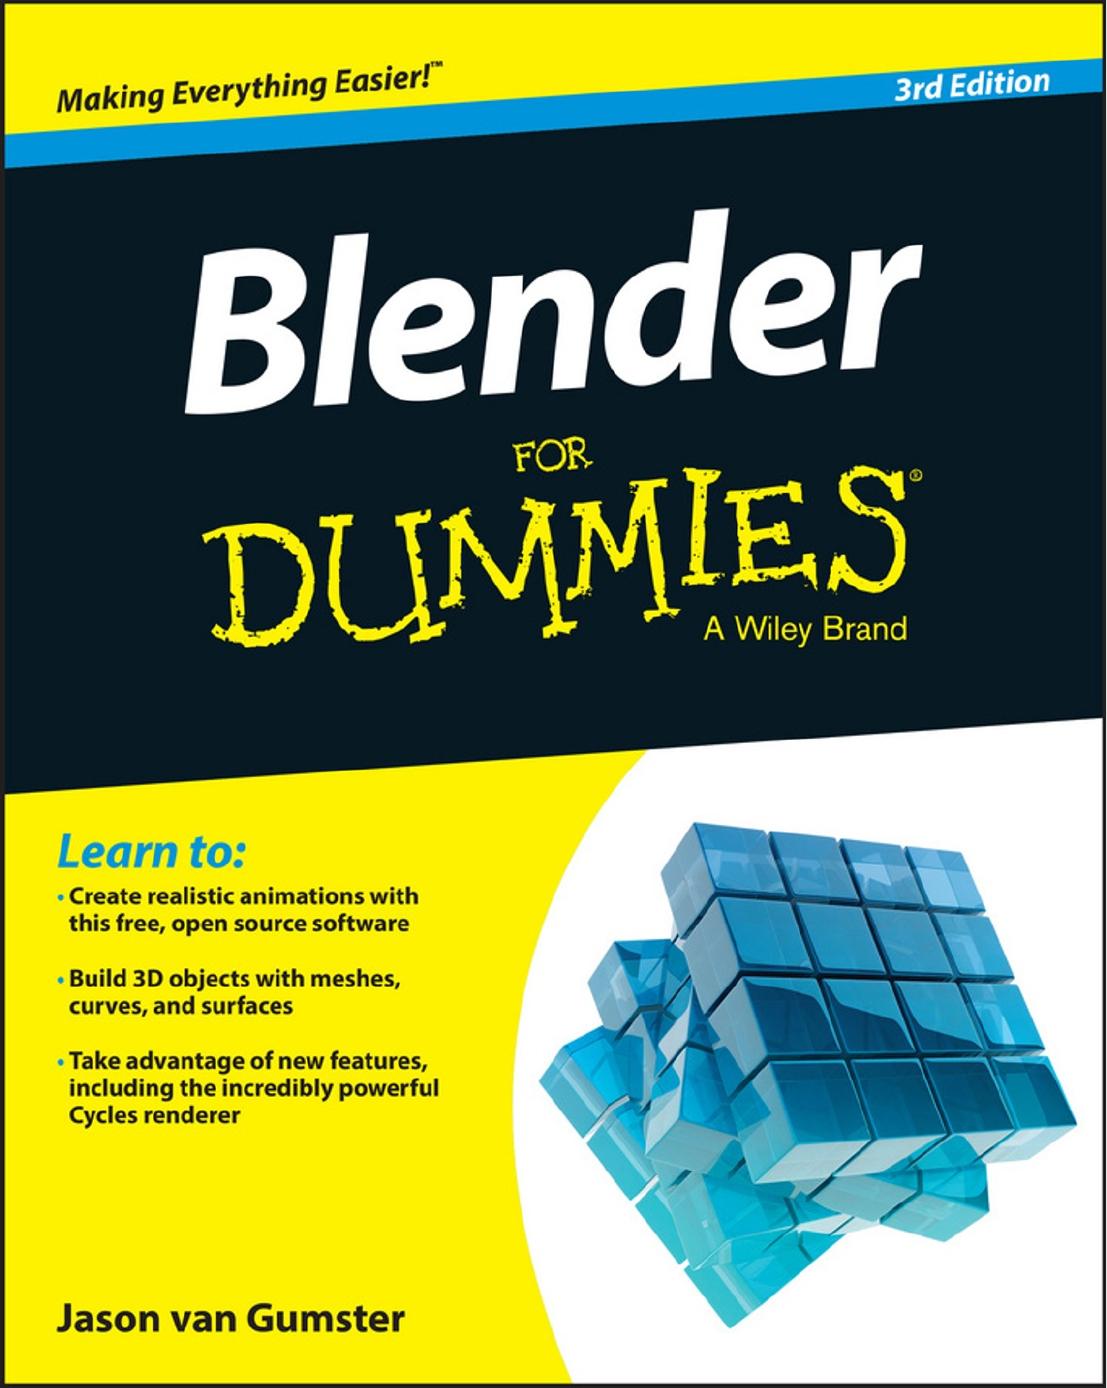 Blender For Dummies by Jason van Gumster